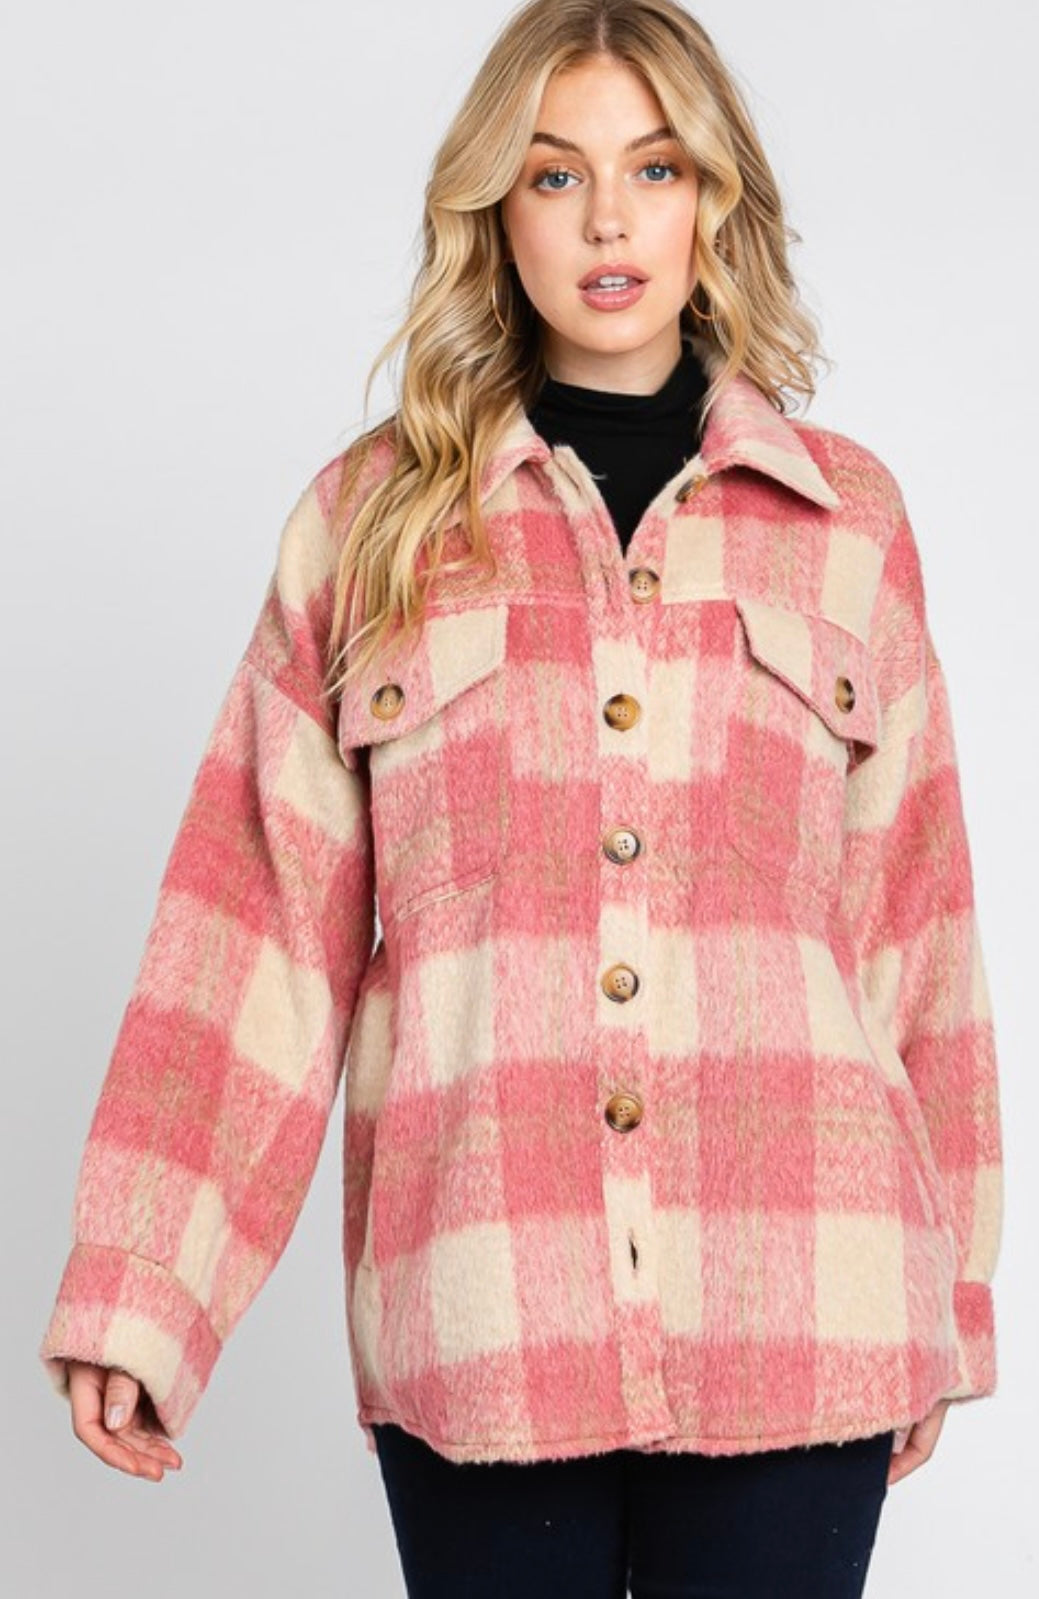 Brushed Plaid Jacket - Grace Ann Faith Boutique - Official Online Boutique 